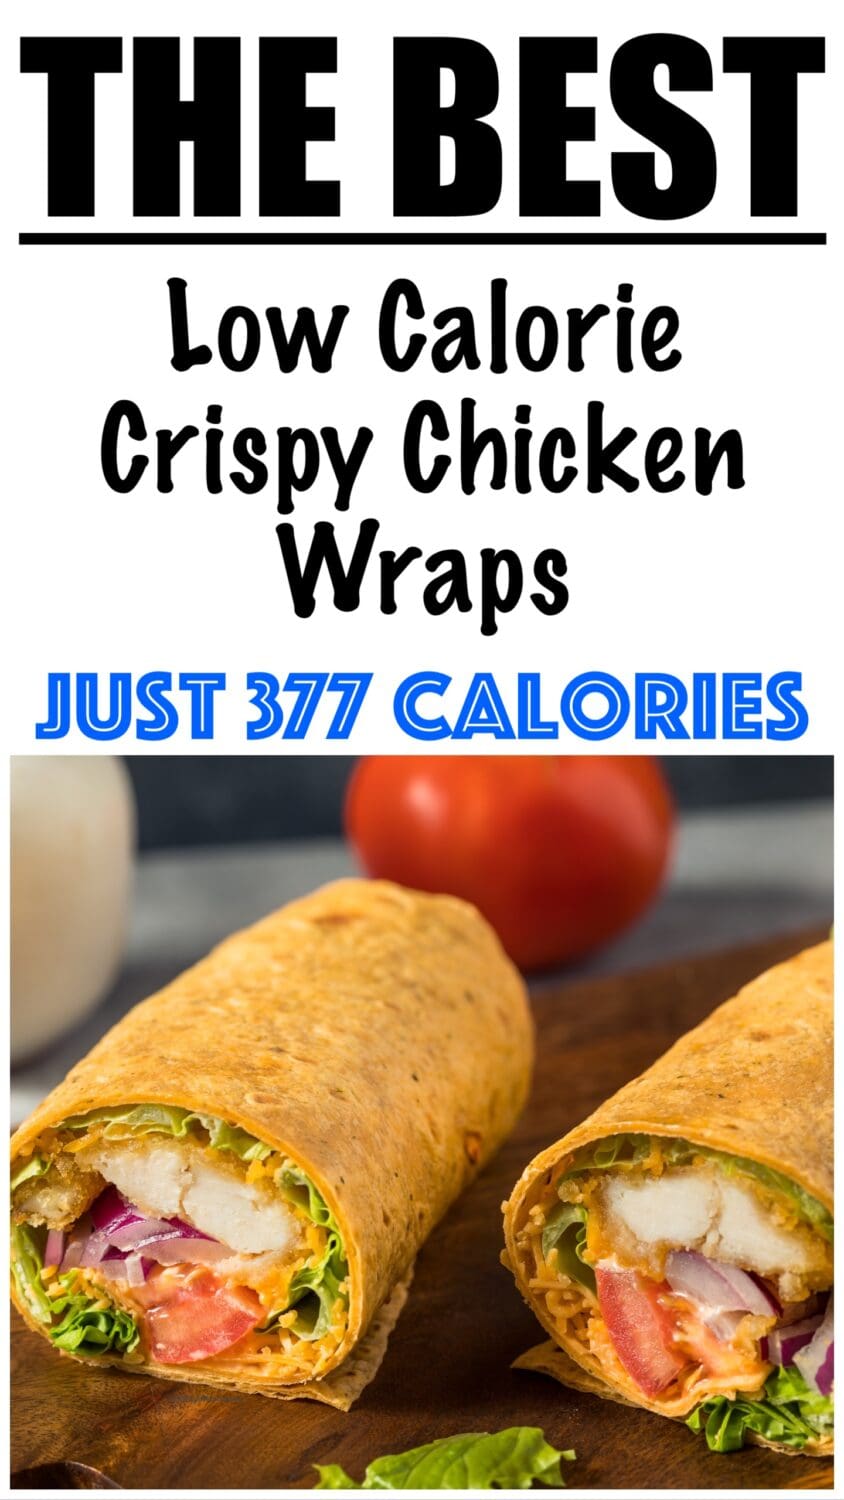 Low Calorie Crispy Chicken Wraps